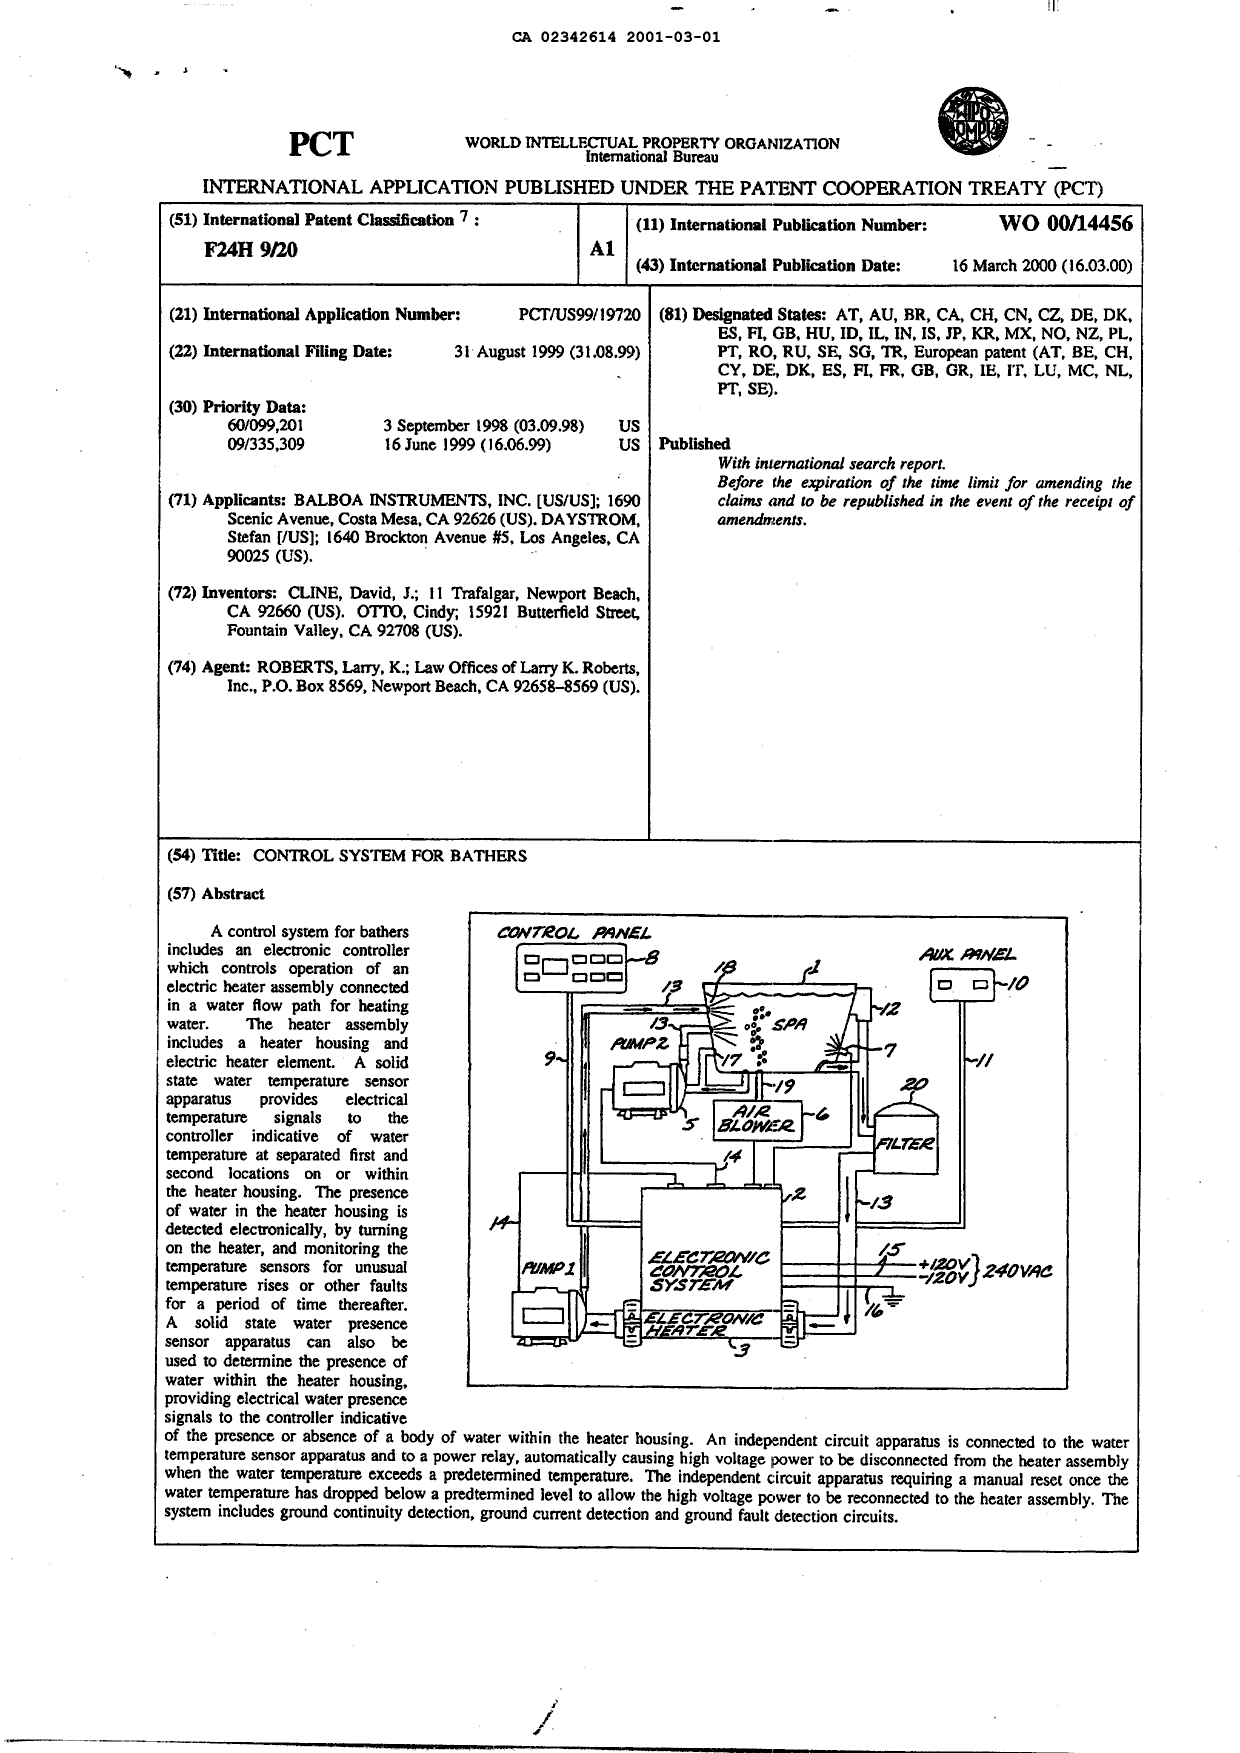 Document de brevet canadien 2342614. Abrégé 20010301. Image 1 de 1